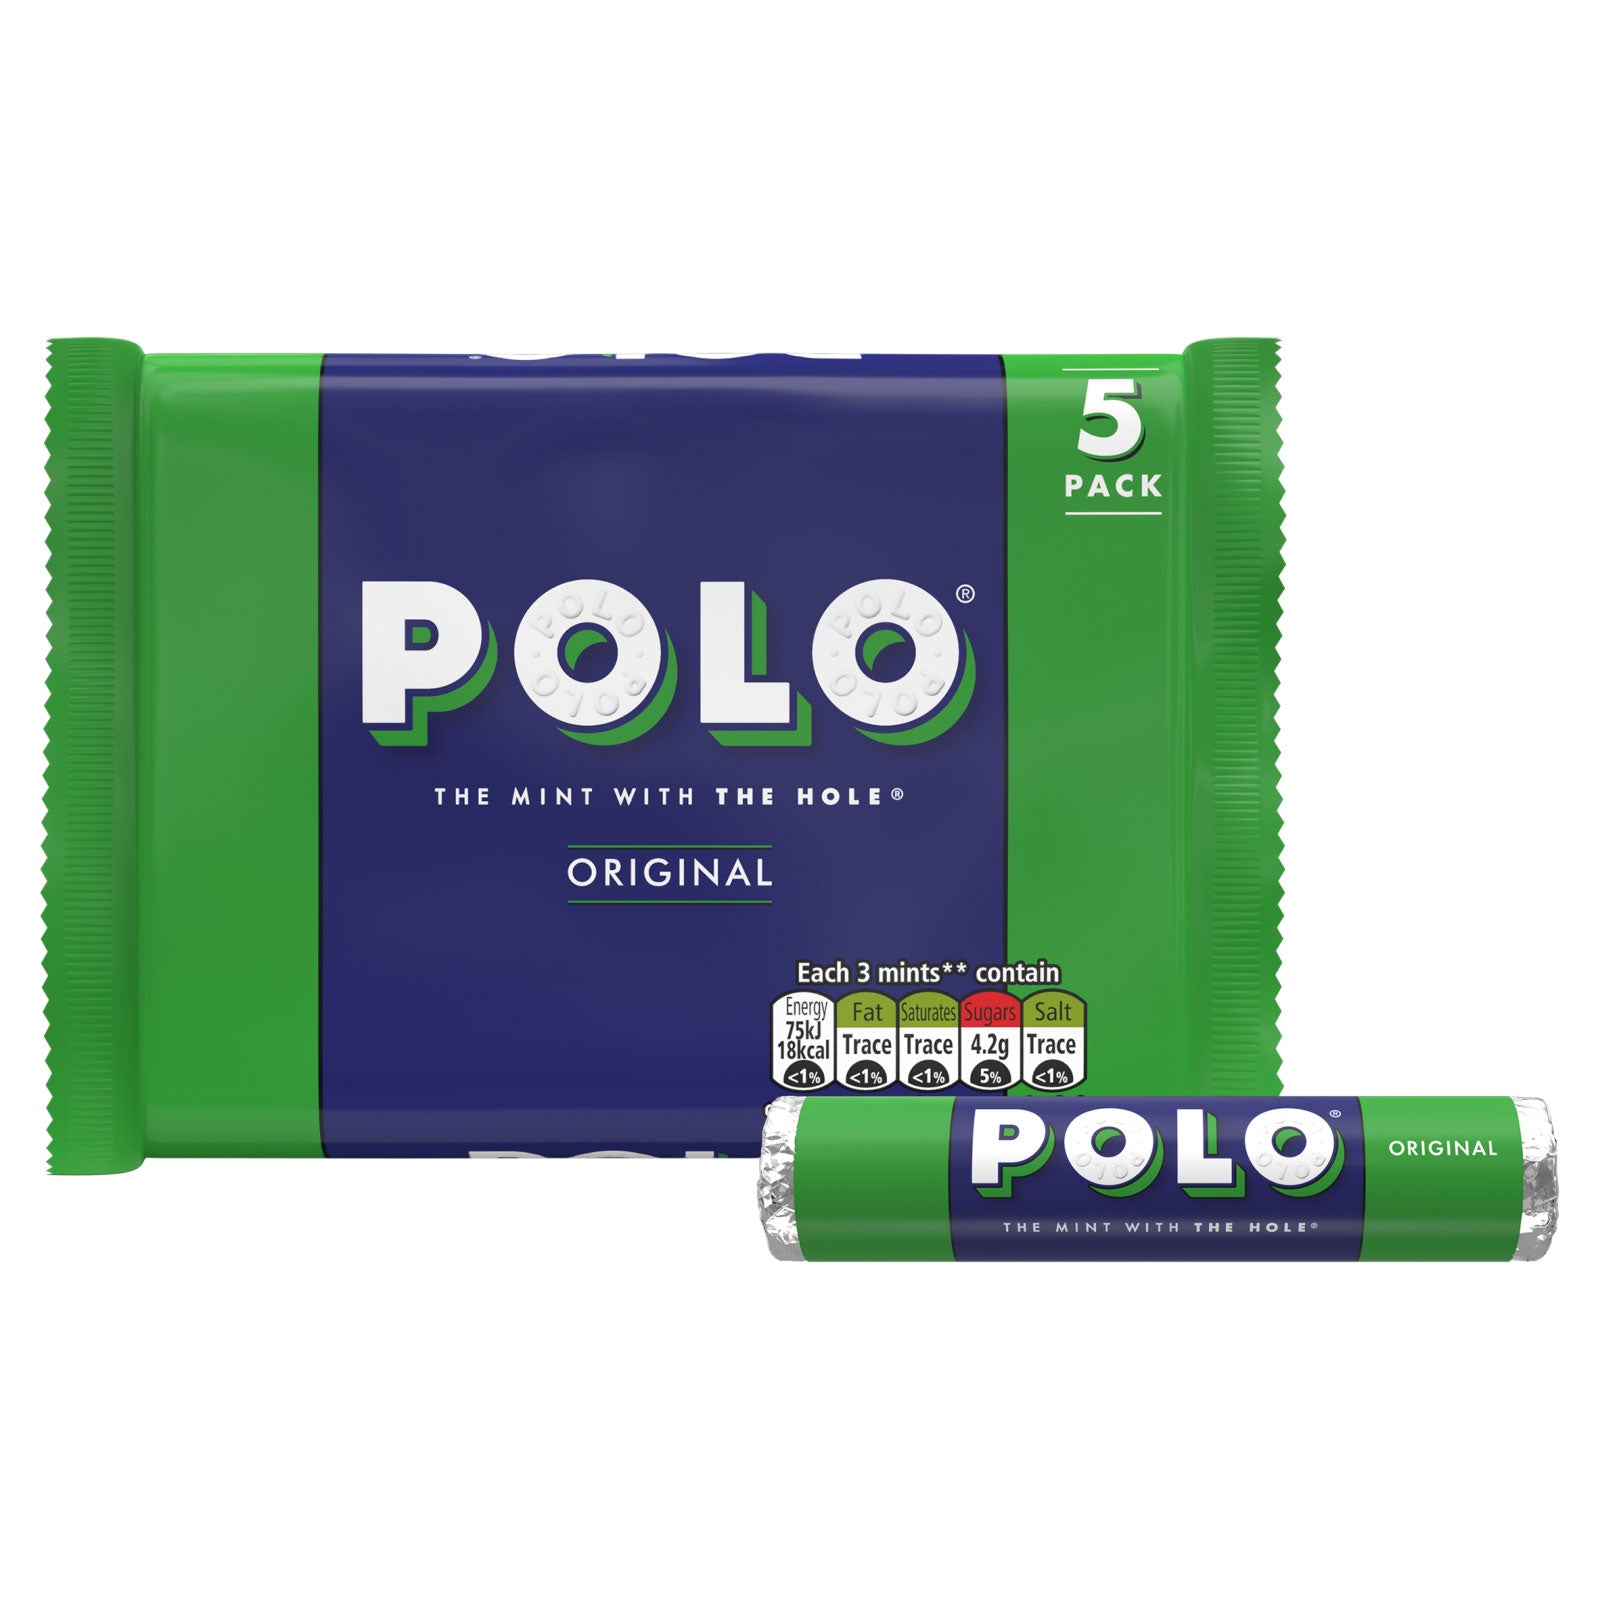 Polo Original Mints 5pk (25g x 5)